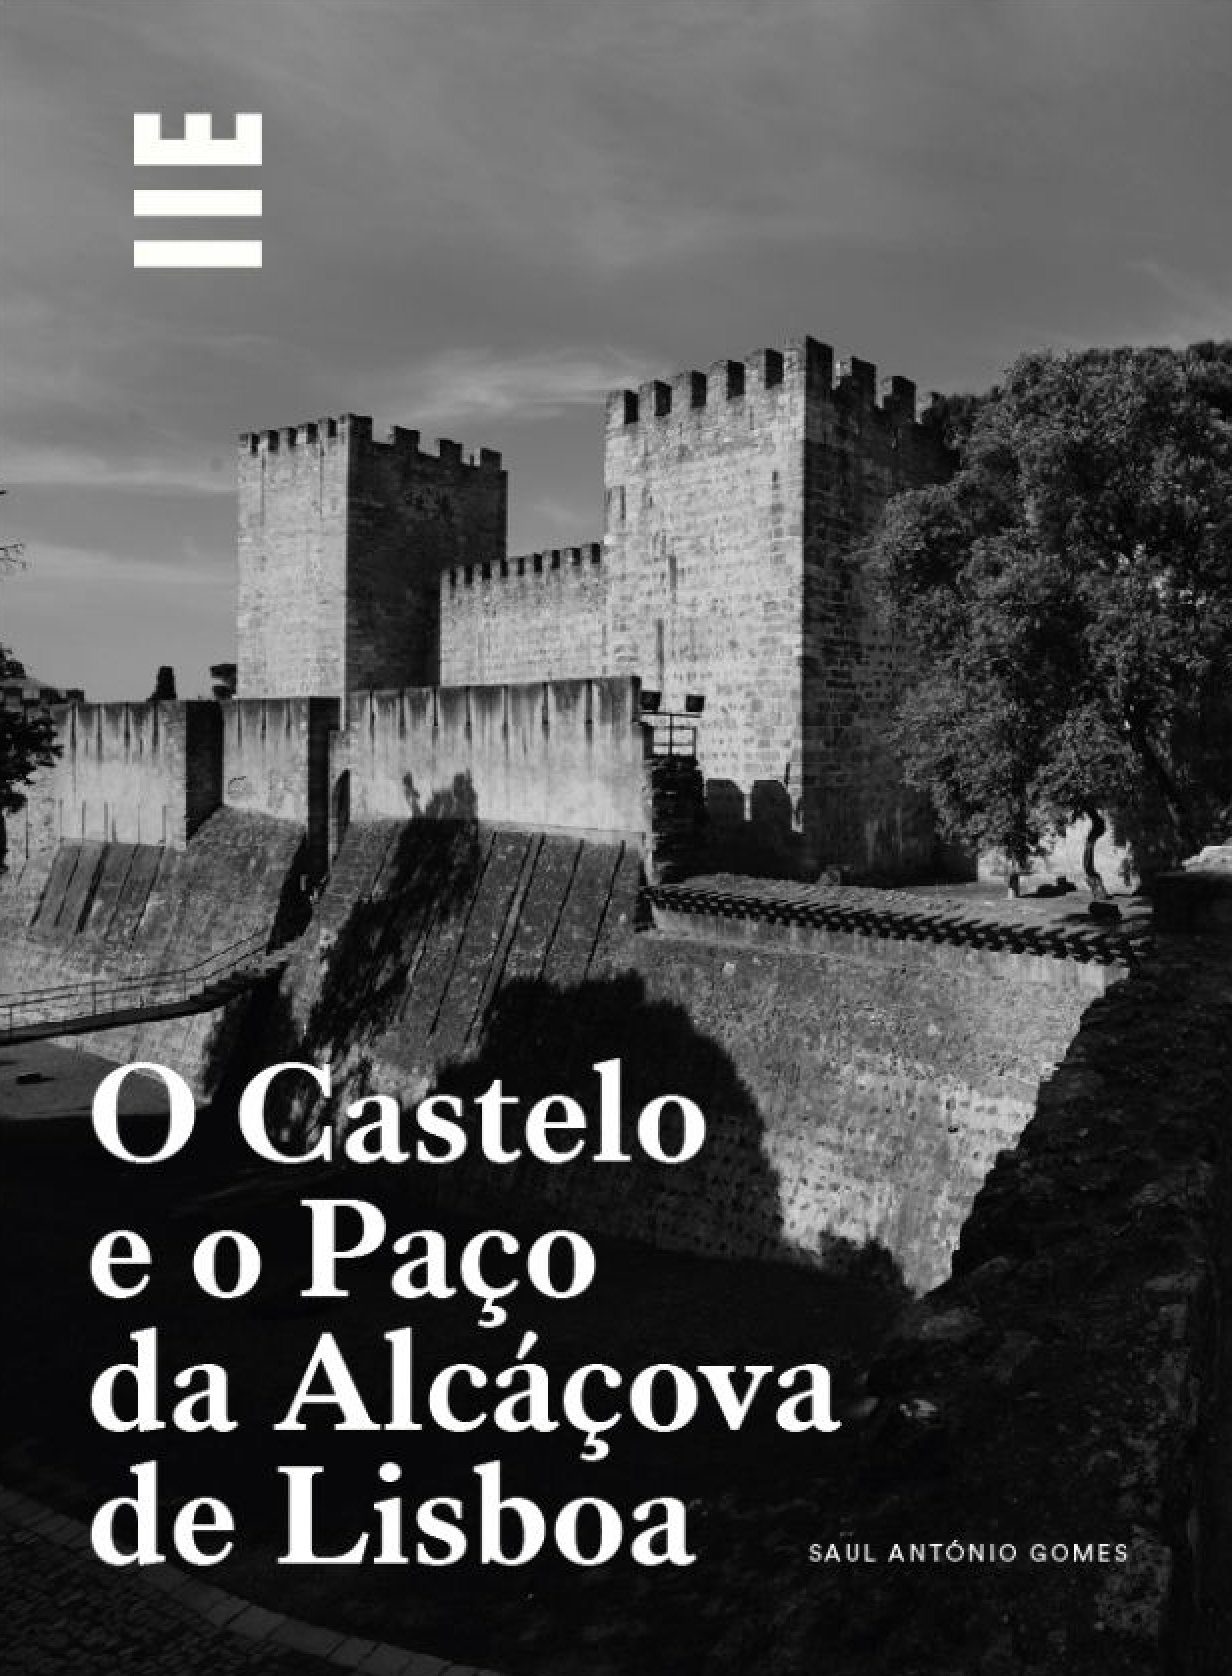 Lançamento da obra O Castelo e o Paço da Alcáçova de Lisboa, da autoria de Saul António Gomes, investigador do CHSC